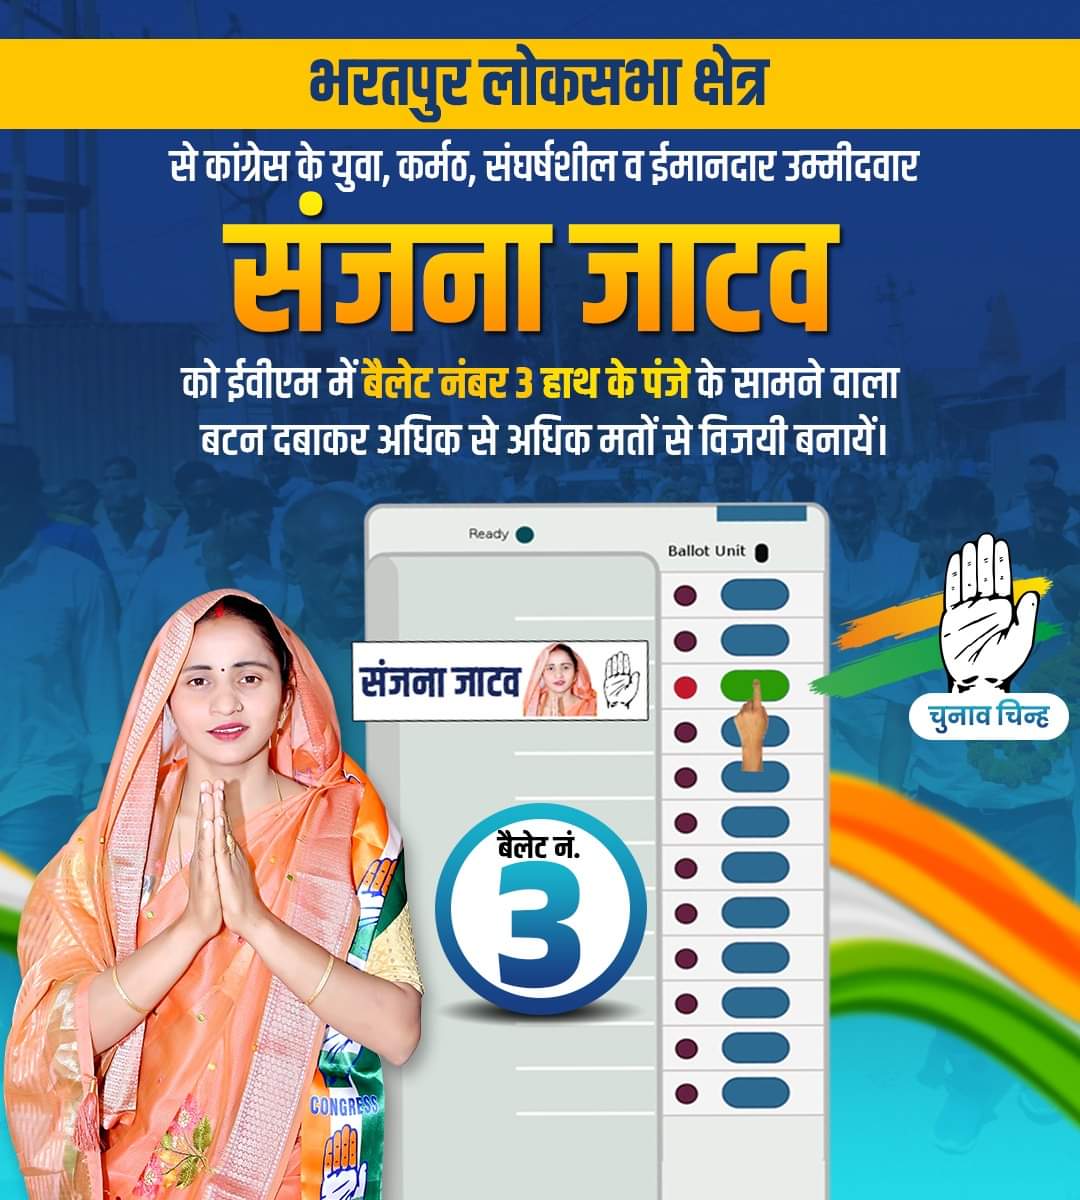 जाटव समाज के राजस्थान से भावी सांसदों को अग्रिम बधाई एवं सुभकामनाएँ🎉✌️
समस्त करौली-धौलपुर और भरतपुर संसदीय क्षेत्र वासियों से मेरा विनम्र अनुरोध है कि आने वाली 19 अप्रैल को मुझे अपना अमूल्य वोट देकर भारी मतों से विजयी बनाएं। 
@bhajanlaljatav @IncSanjanajatav

#Karauli_bharatpur